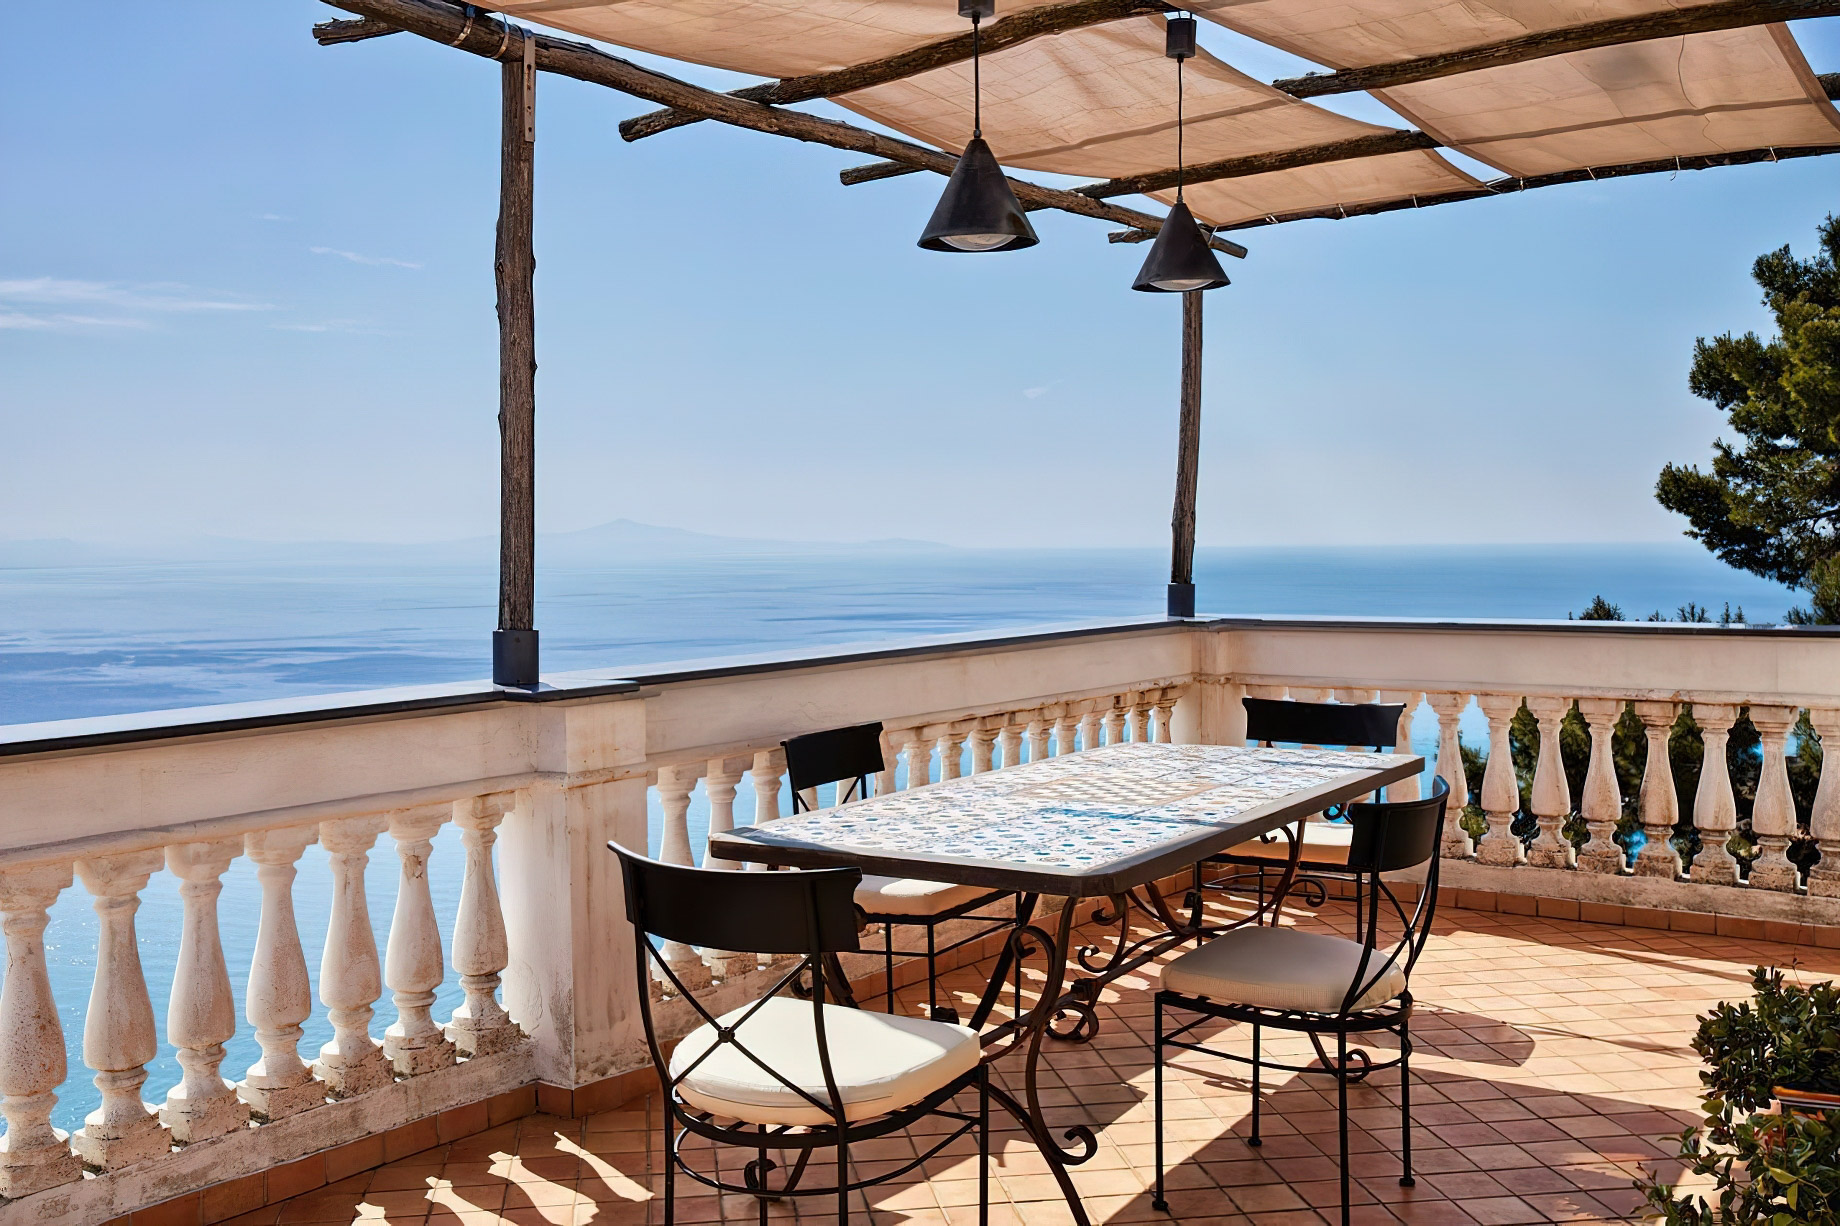 Palazzo Avino Hotel – Amalfi Coast, Ravello, Italy – Terrace